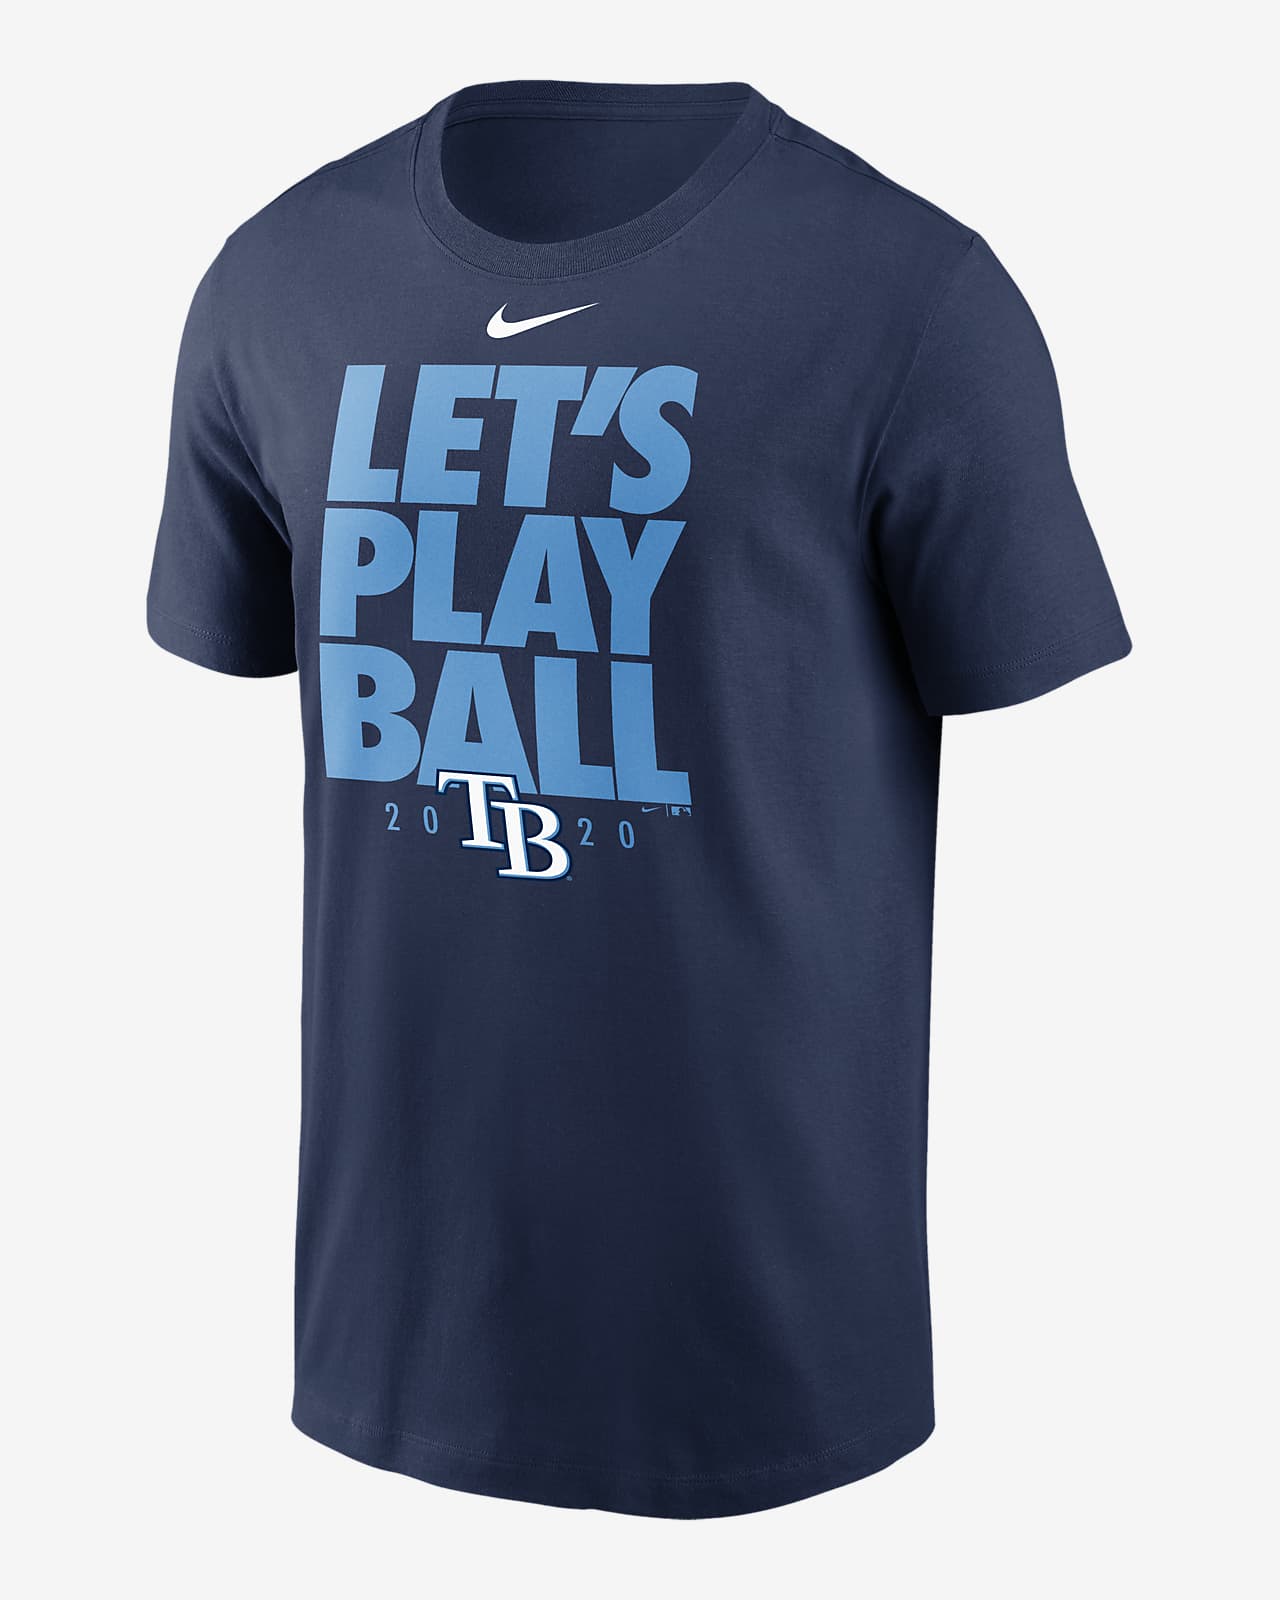 Nike (MLB Rays) Men's T-Shirt. Nike.com